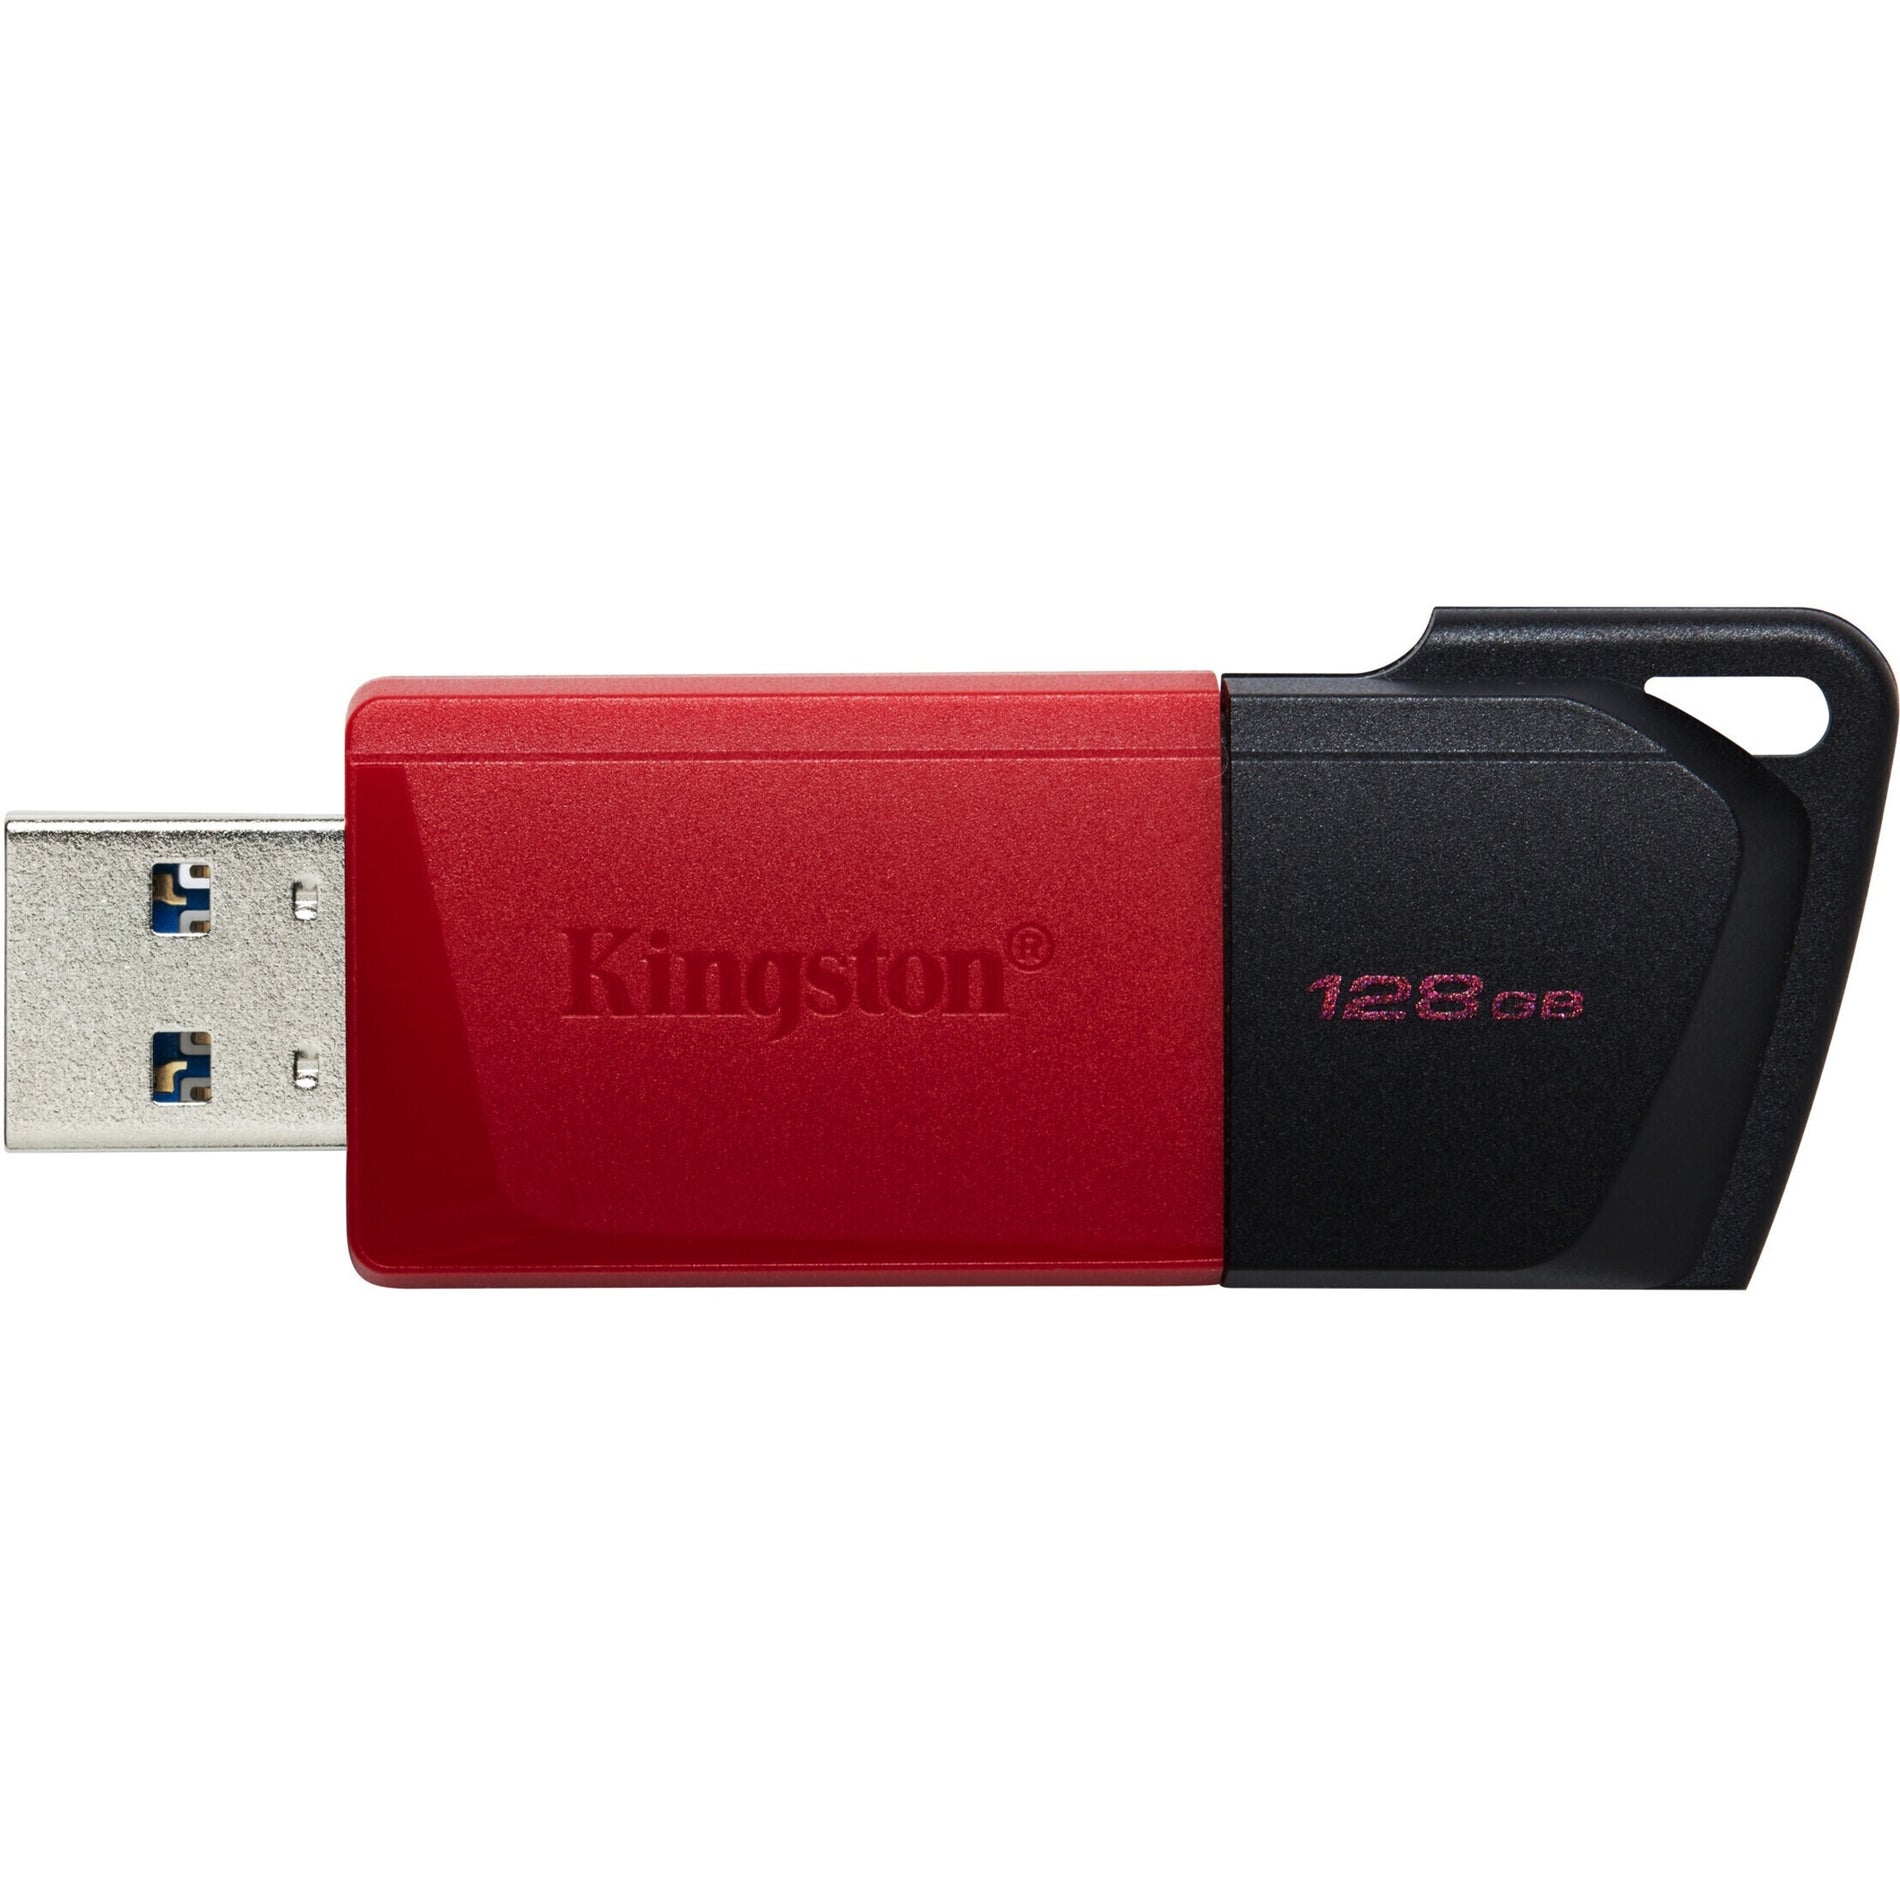 金士顿 DTXM/128GB DataTraveler Exodia M USB 闪存盘，128GB 存储空间，轻巧便携，滑盖设计，钥匙扣，便携式。适用于家庭、工作或旅行  金士顿 - jin1 shi4 dun4